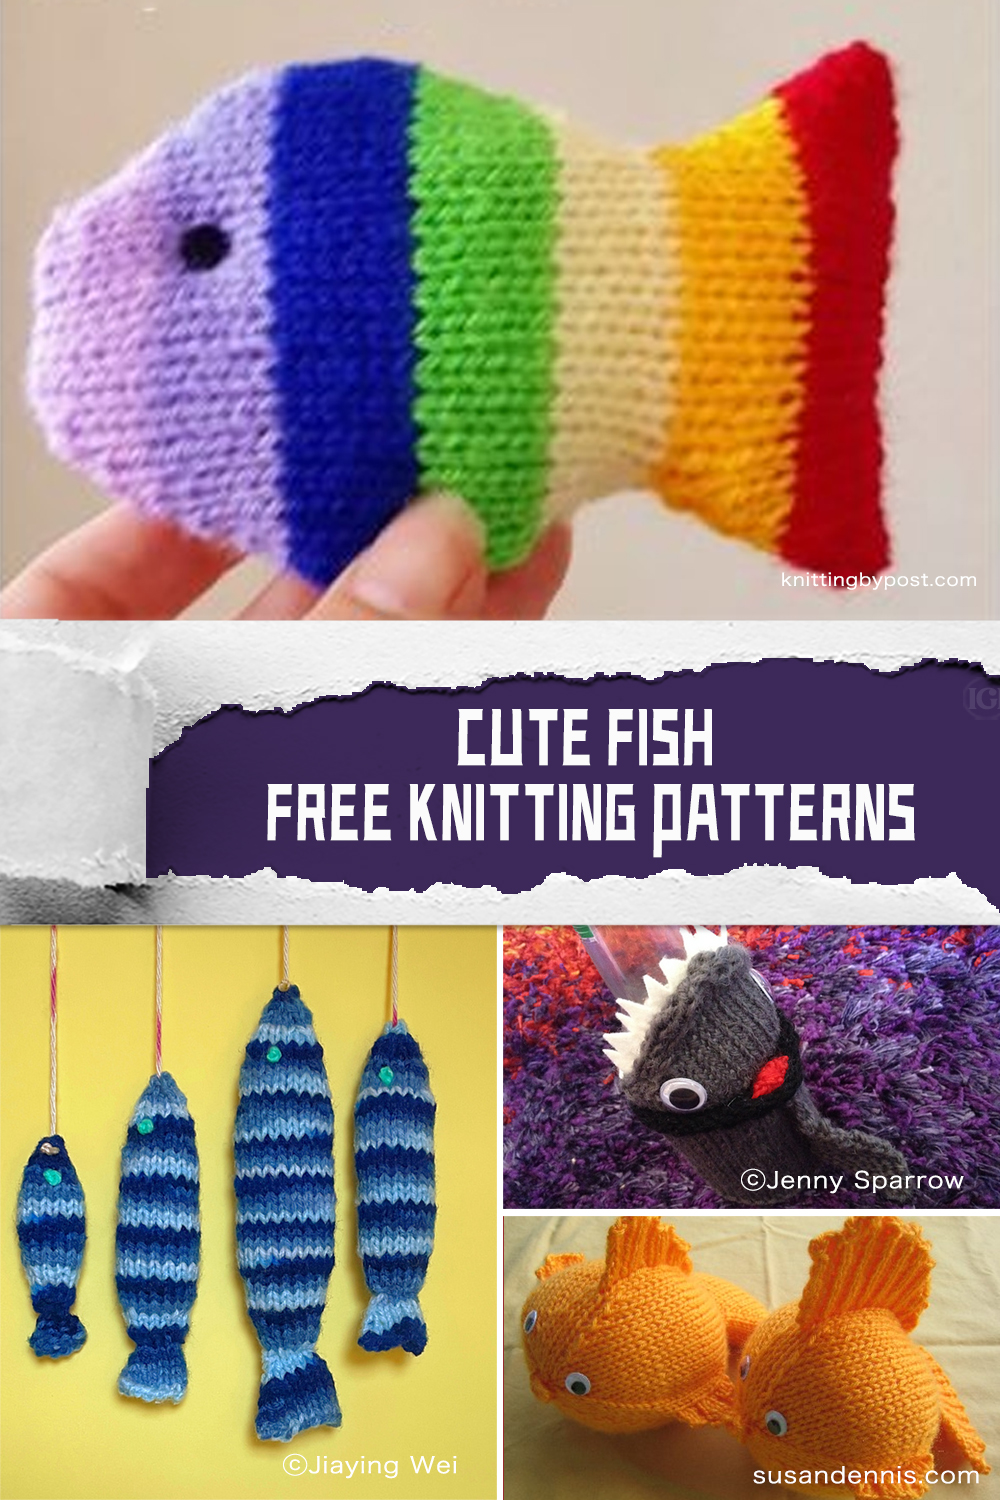 FREE Cute Fish Knitting Patterns